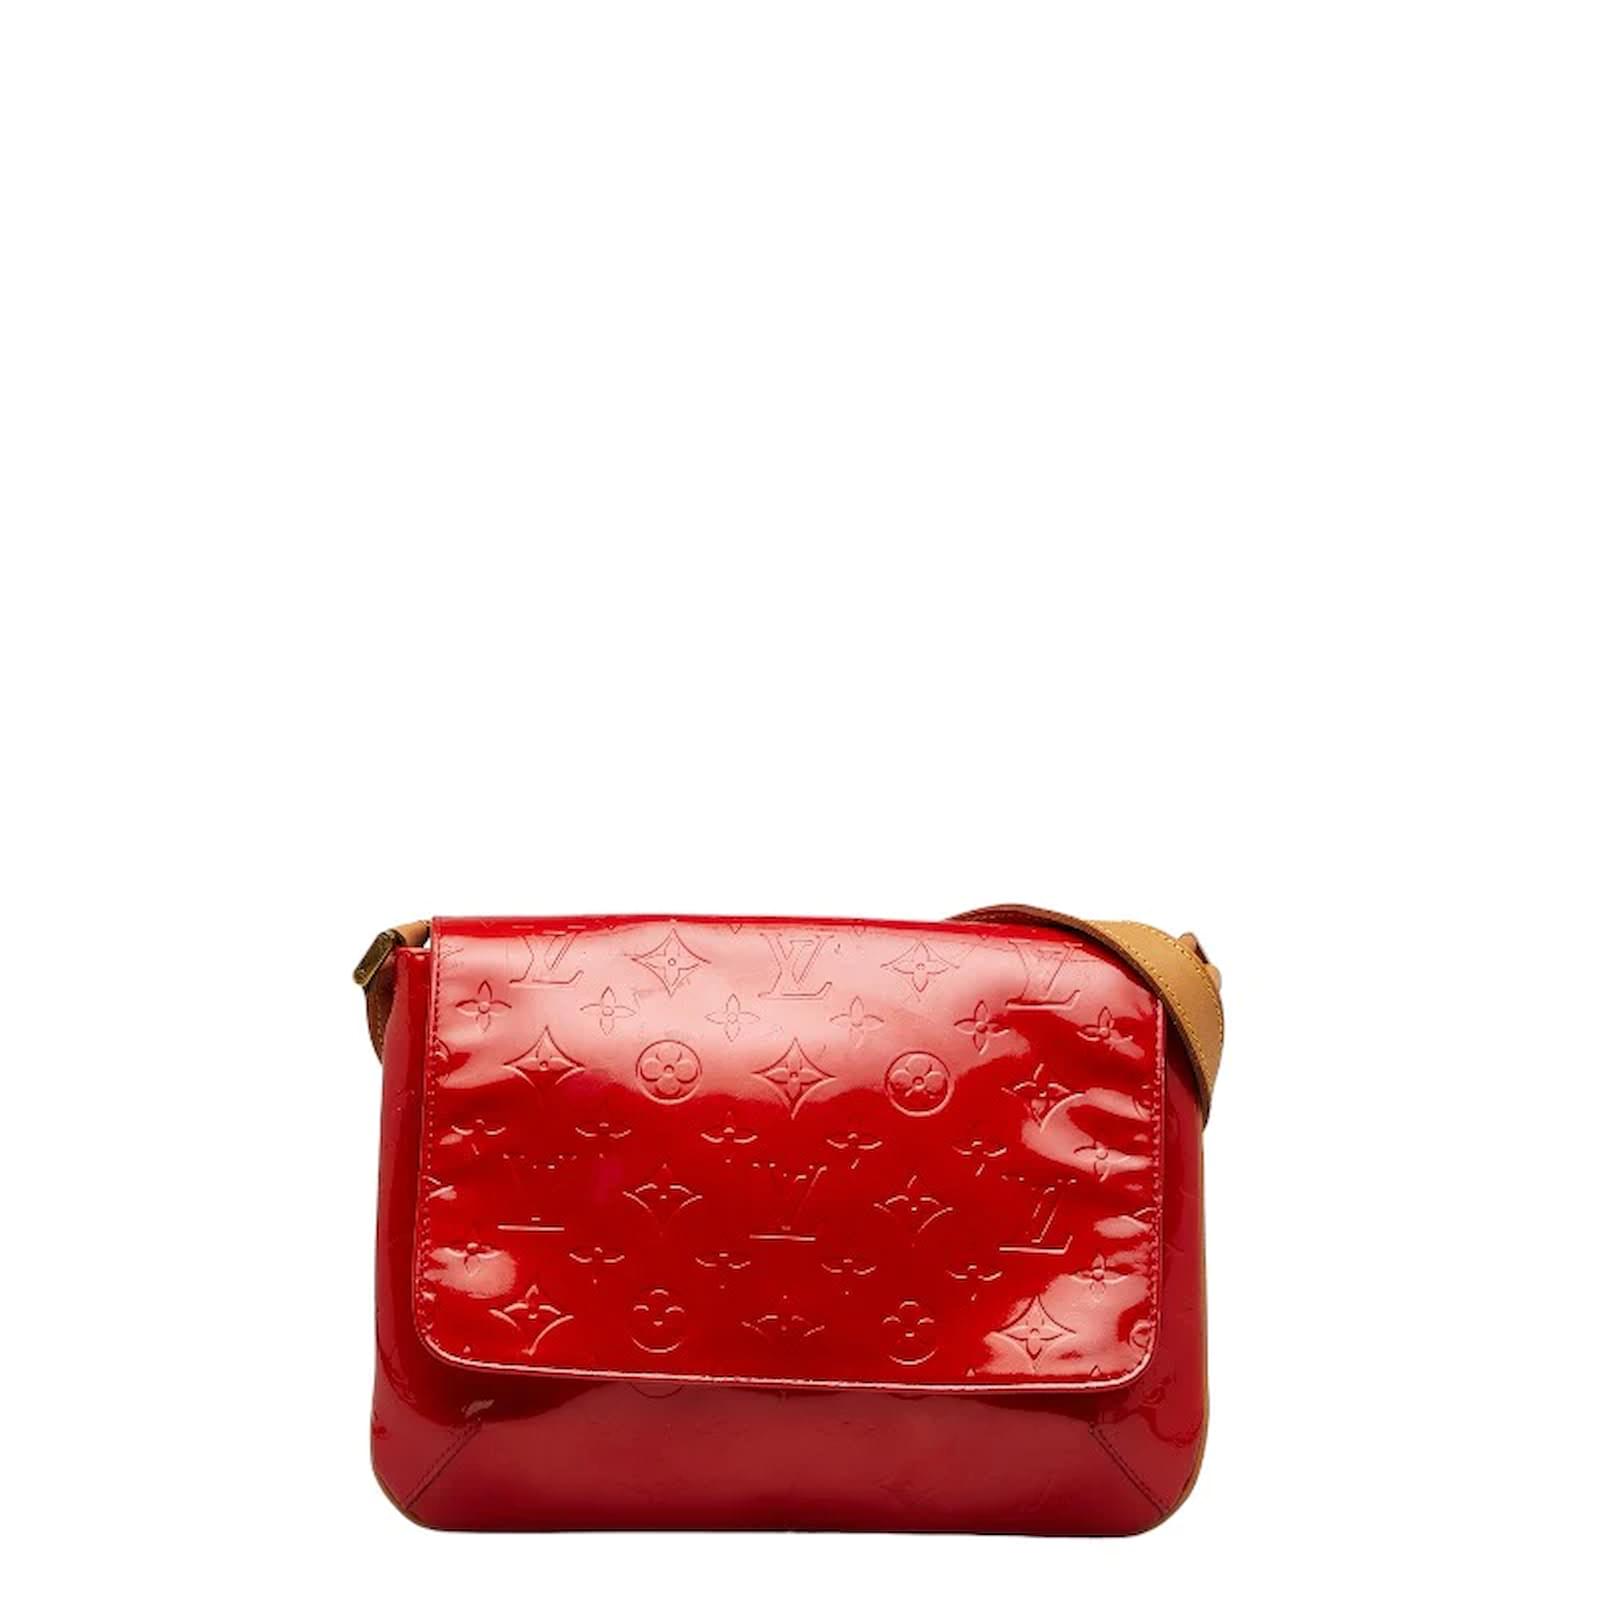 Louis Vuitton Red Monogram Vernis Sherwood PM Handbag Louis Vuitton